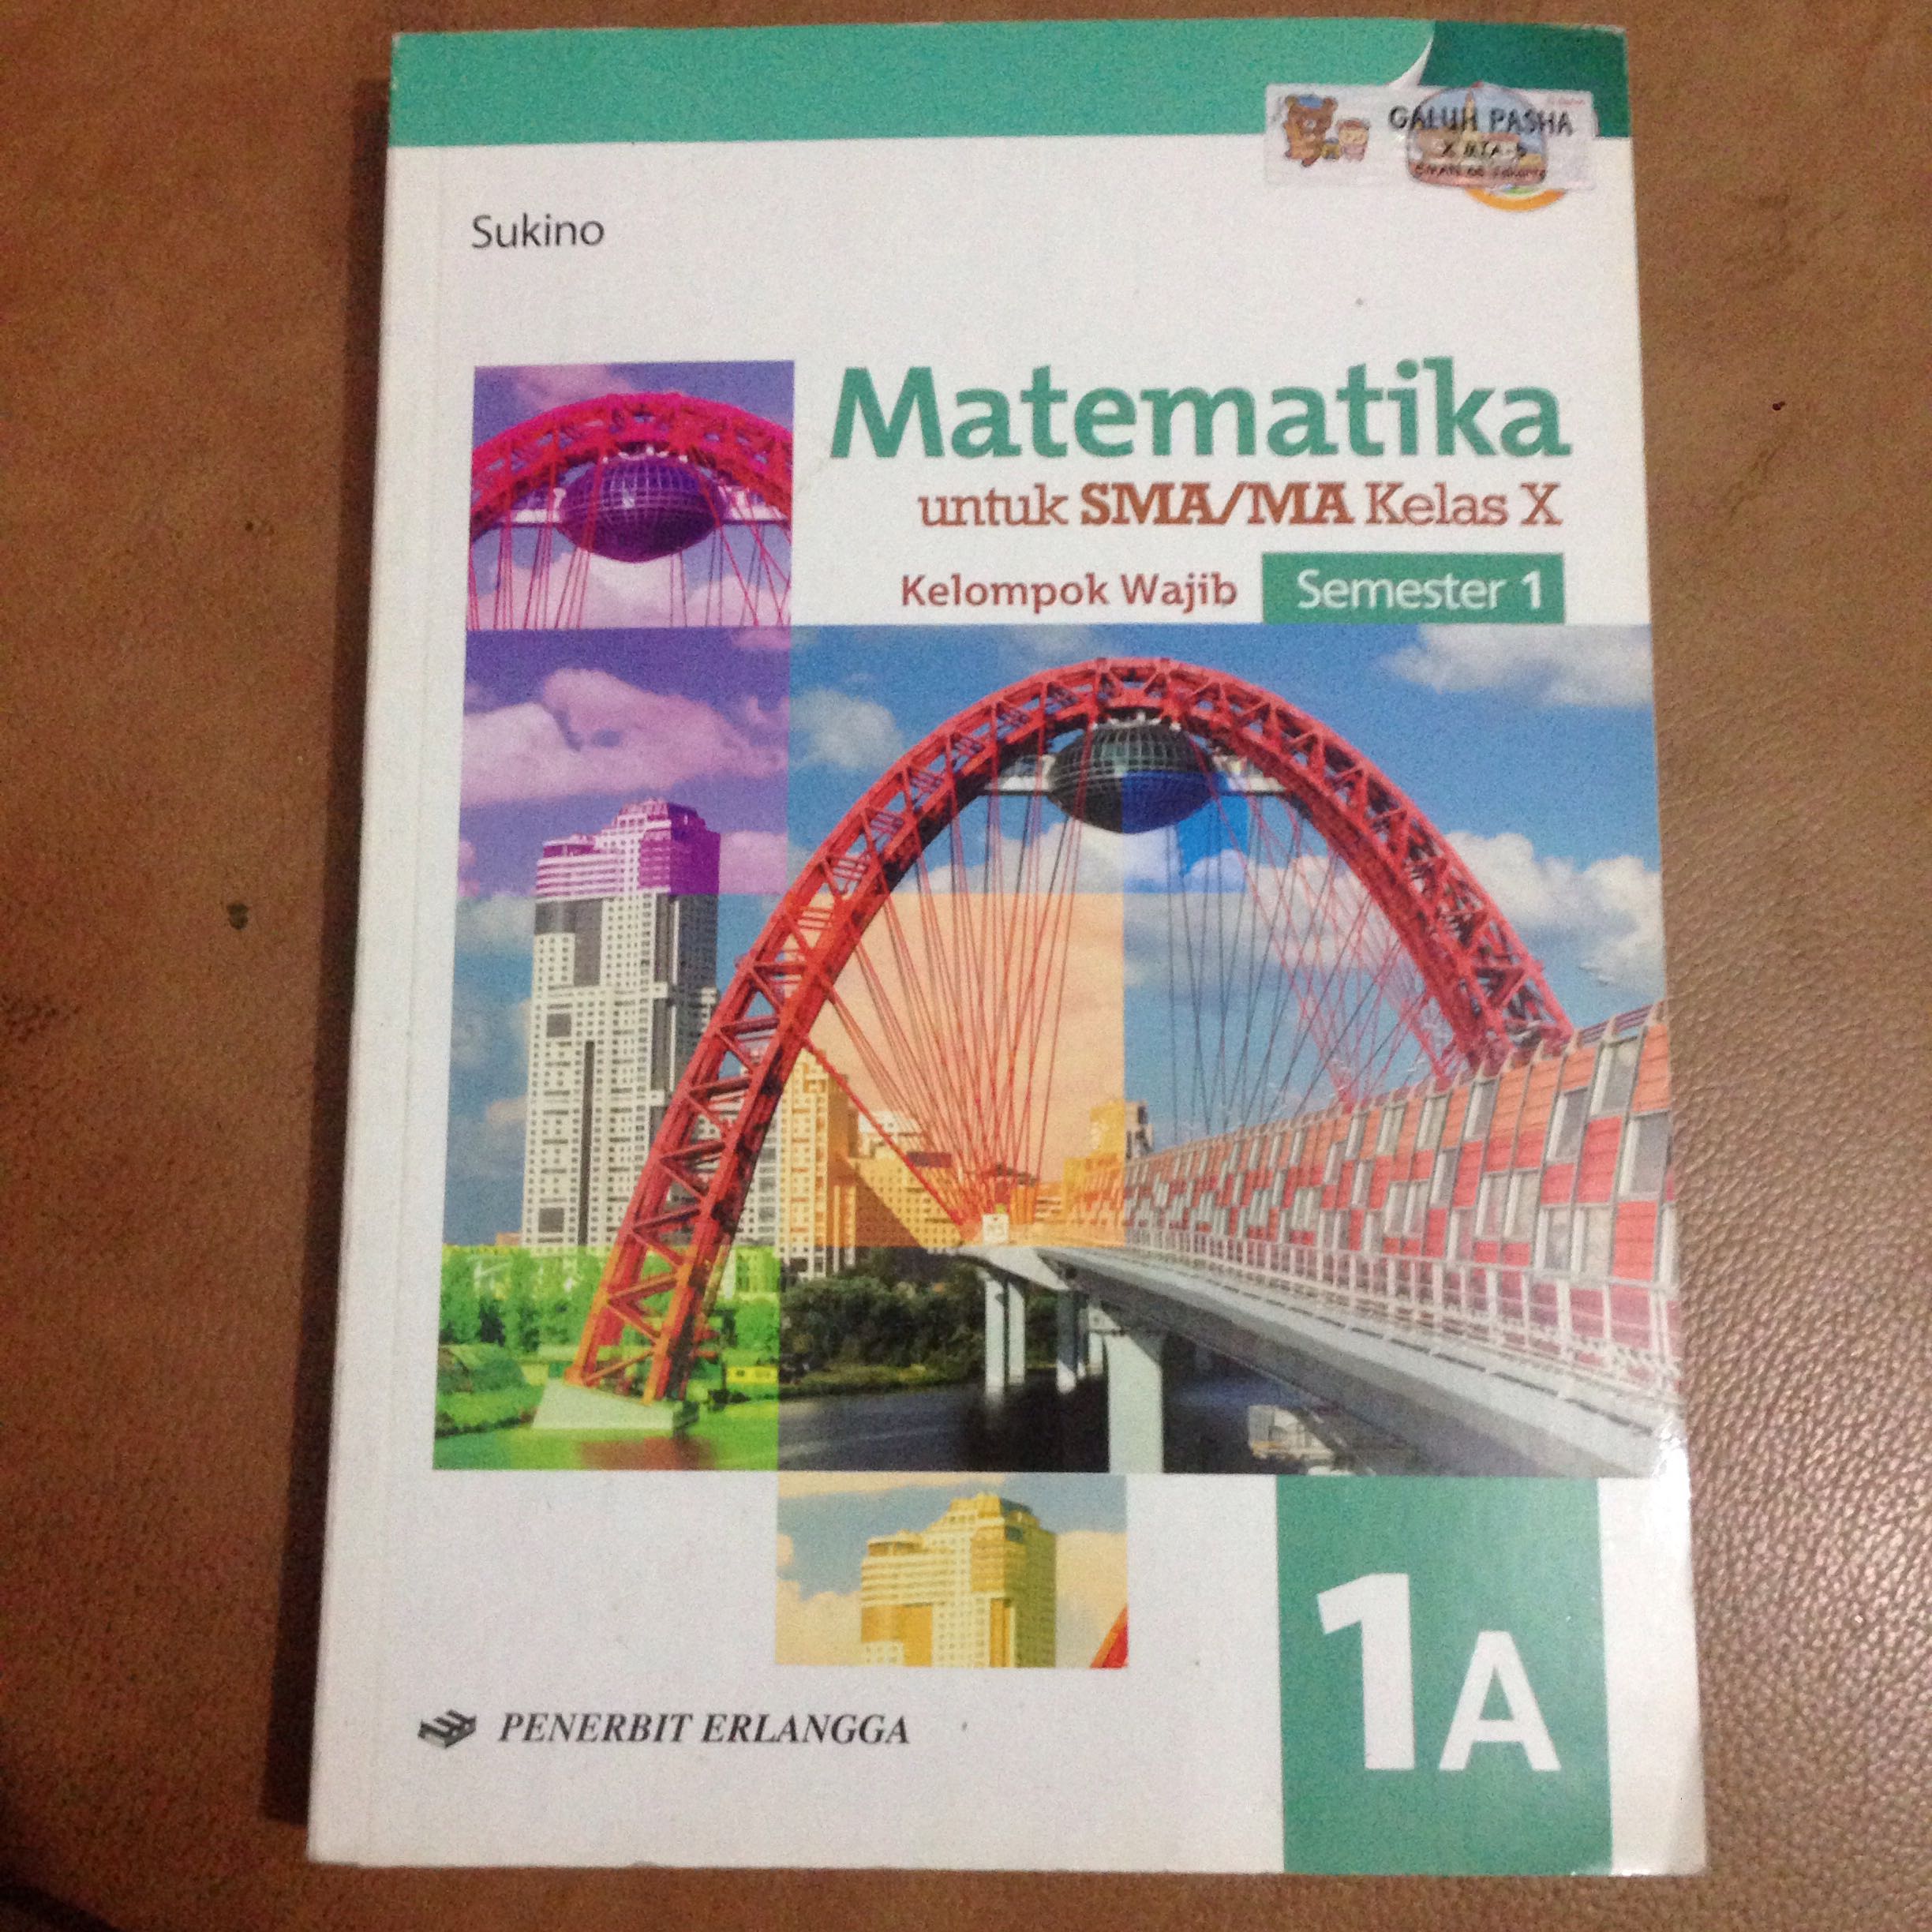 Erlangga Matematika Kelas 10 A Books & Stationery Textbooks on Carousell